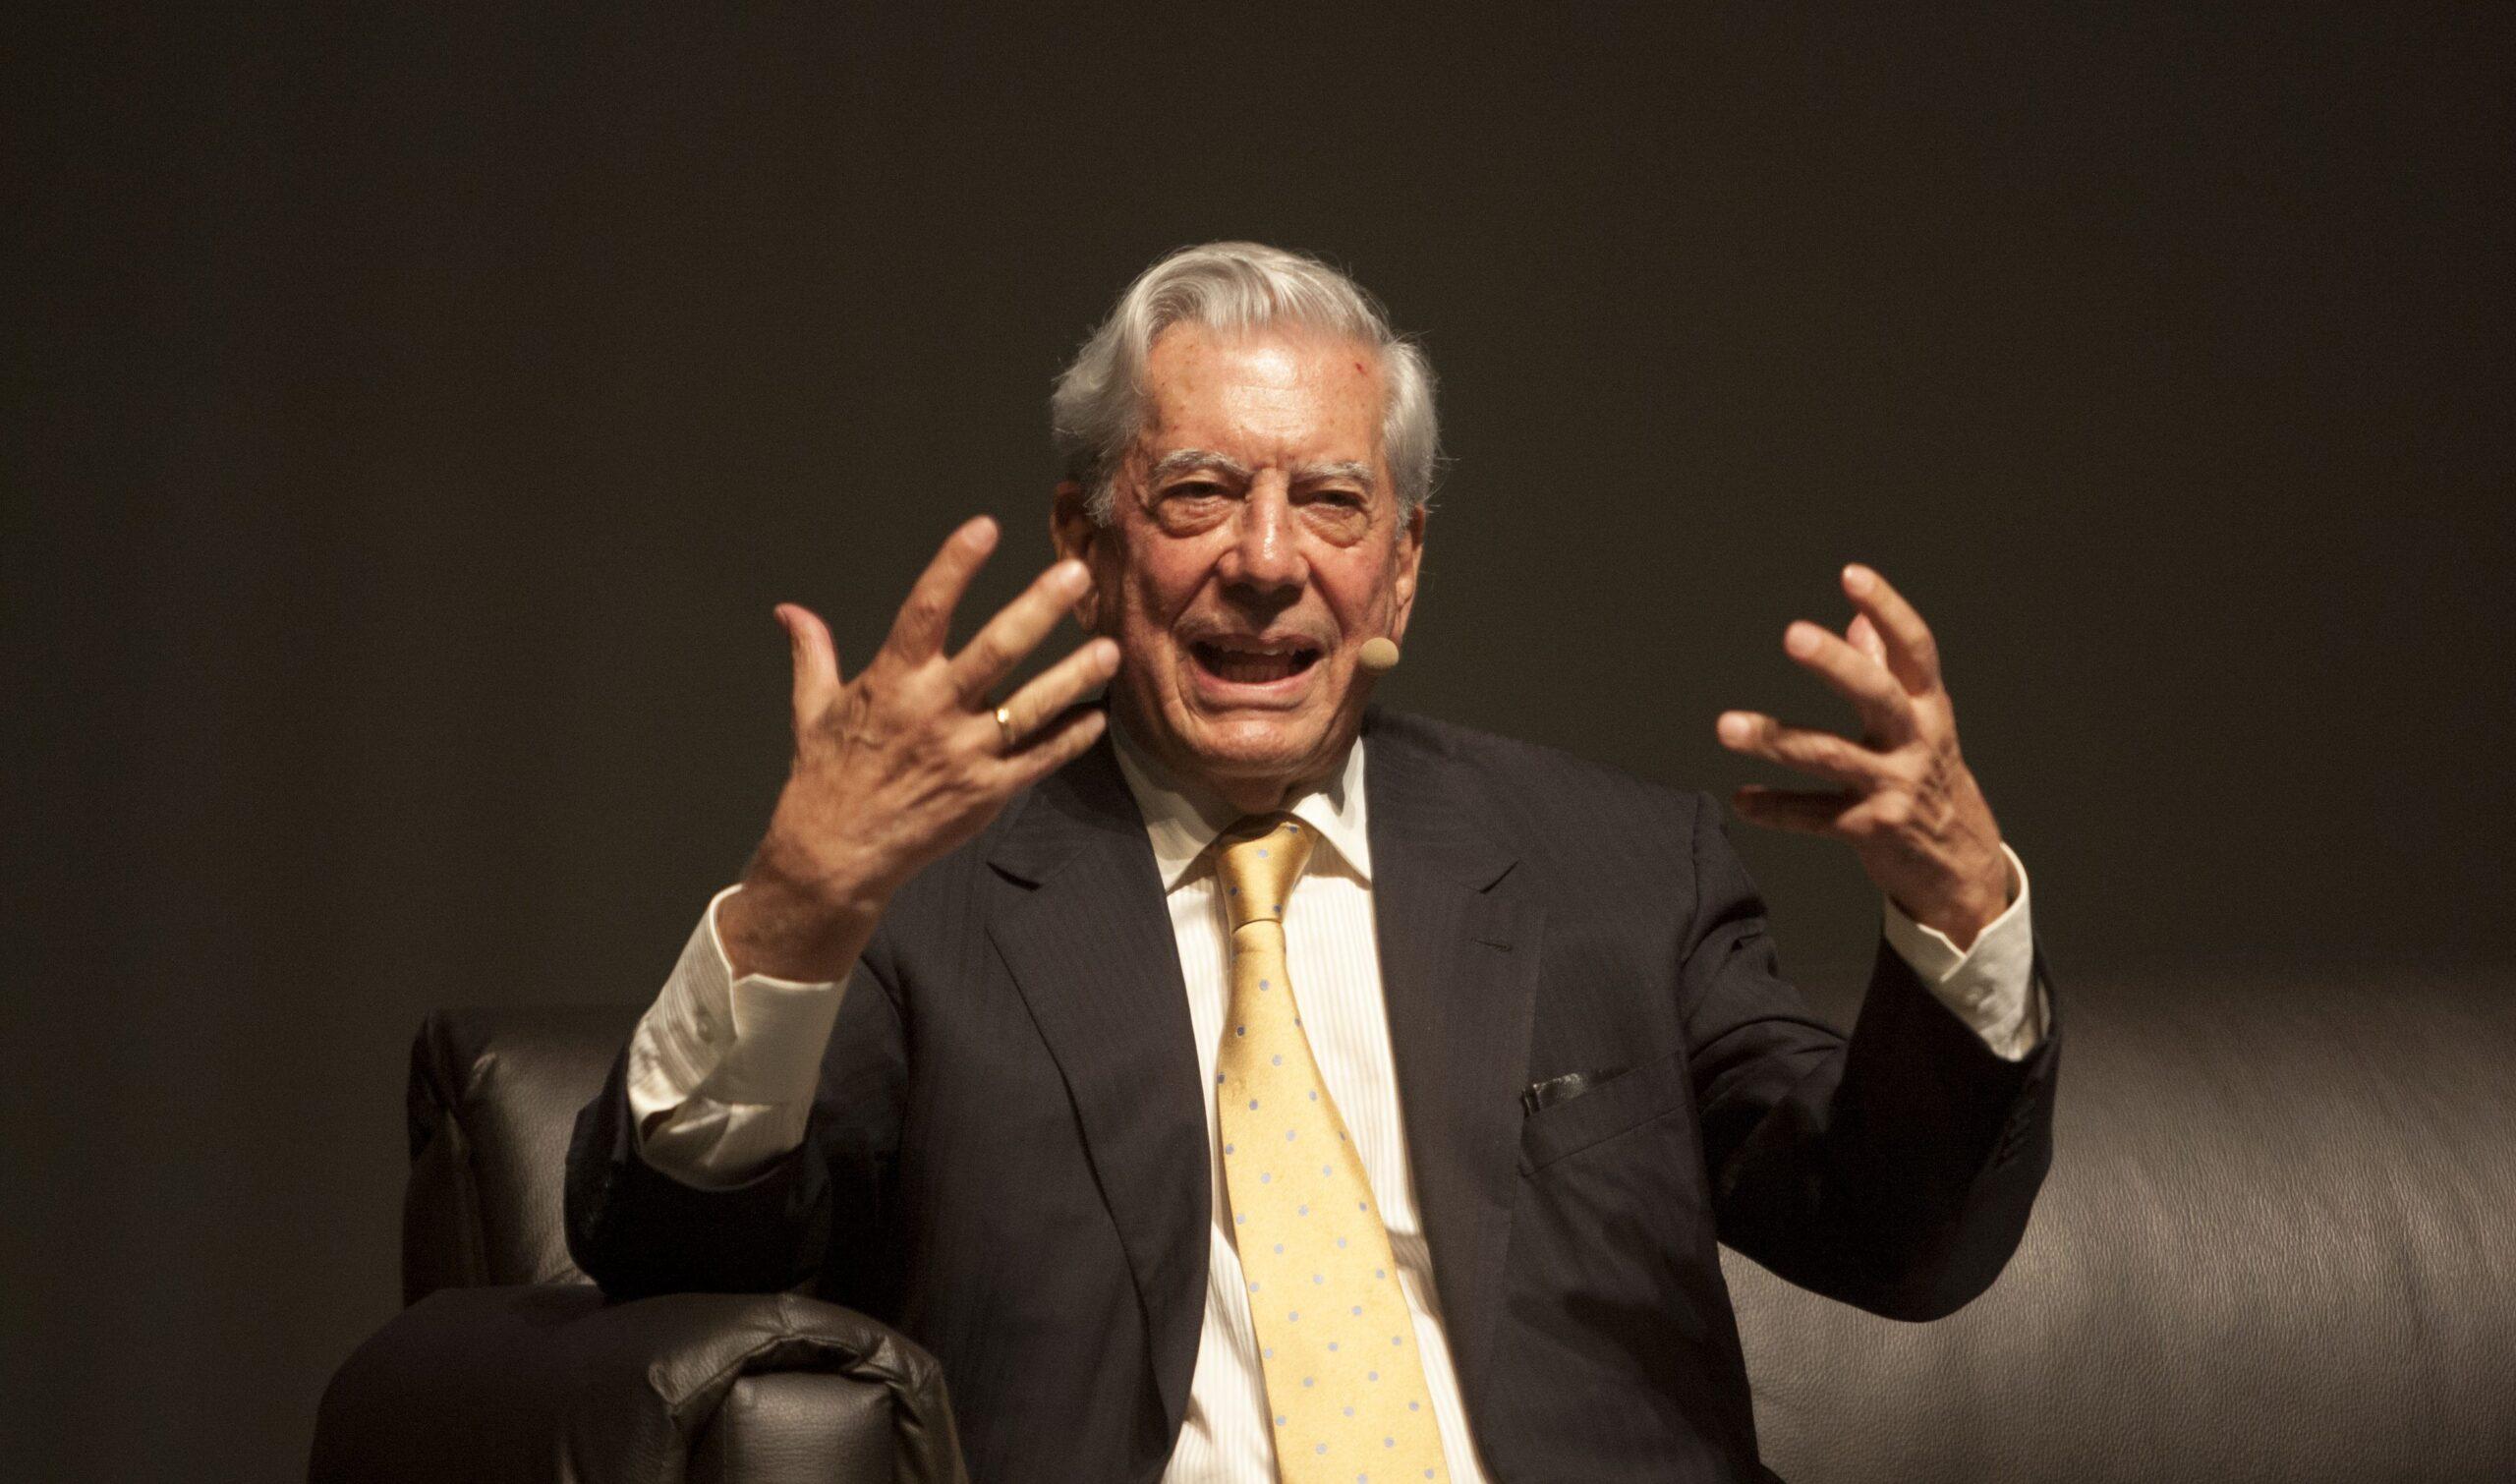 Triunfo de López Obrador sería un retroceso para la democracia, advierte Mario Vargas Llosa